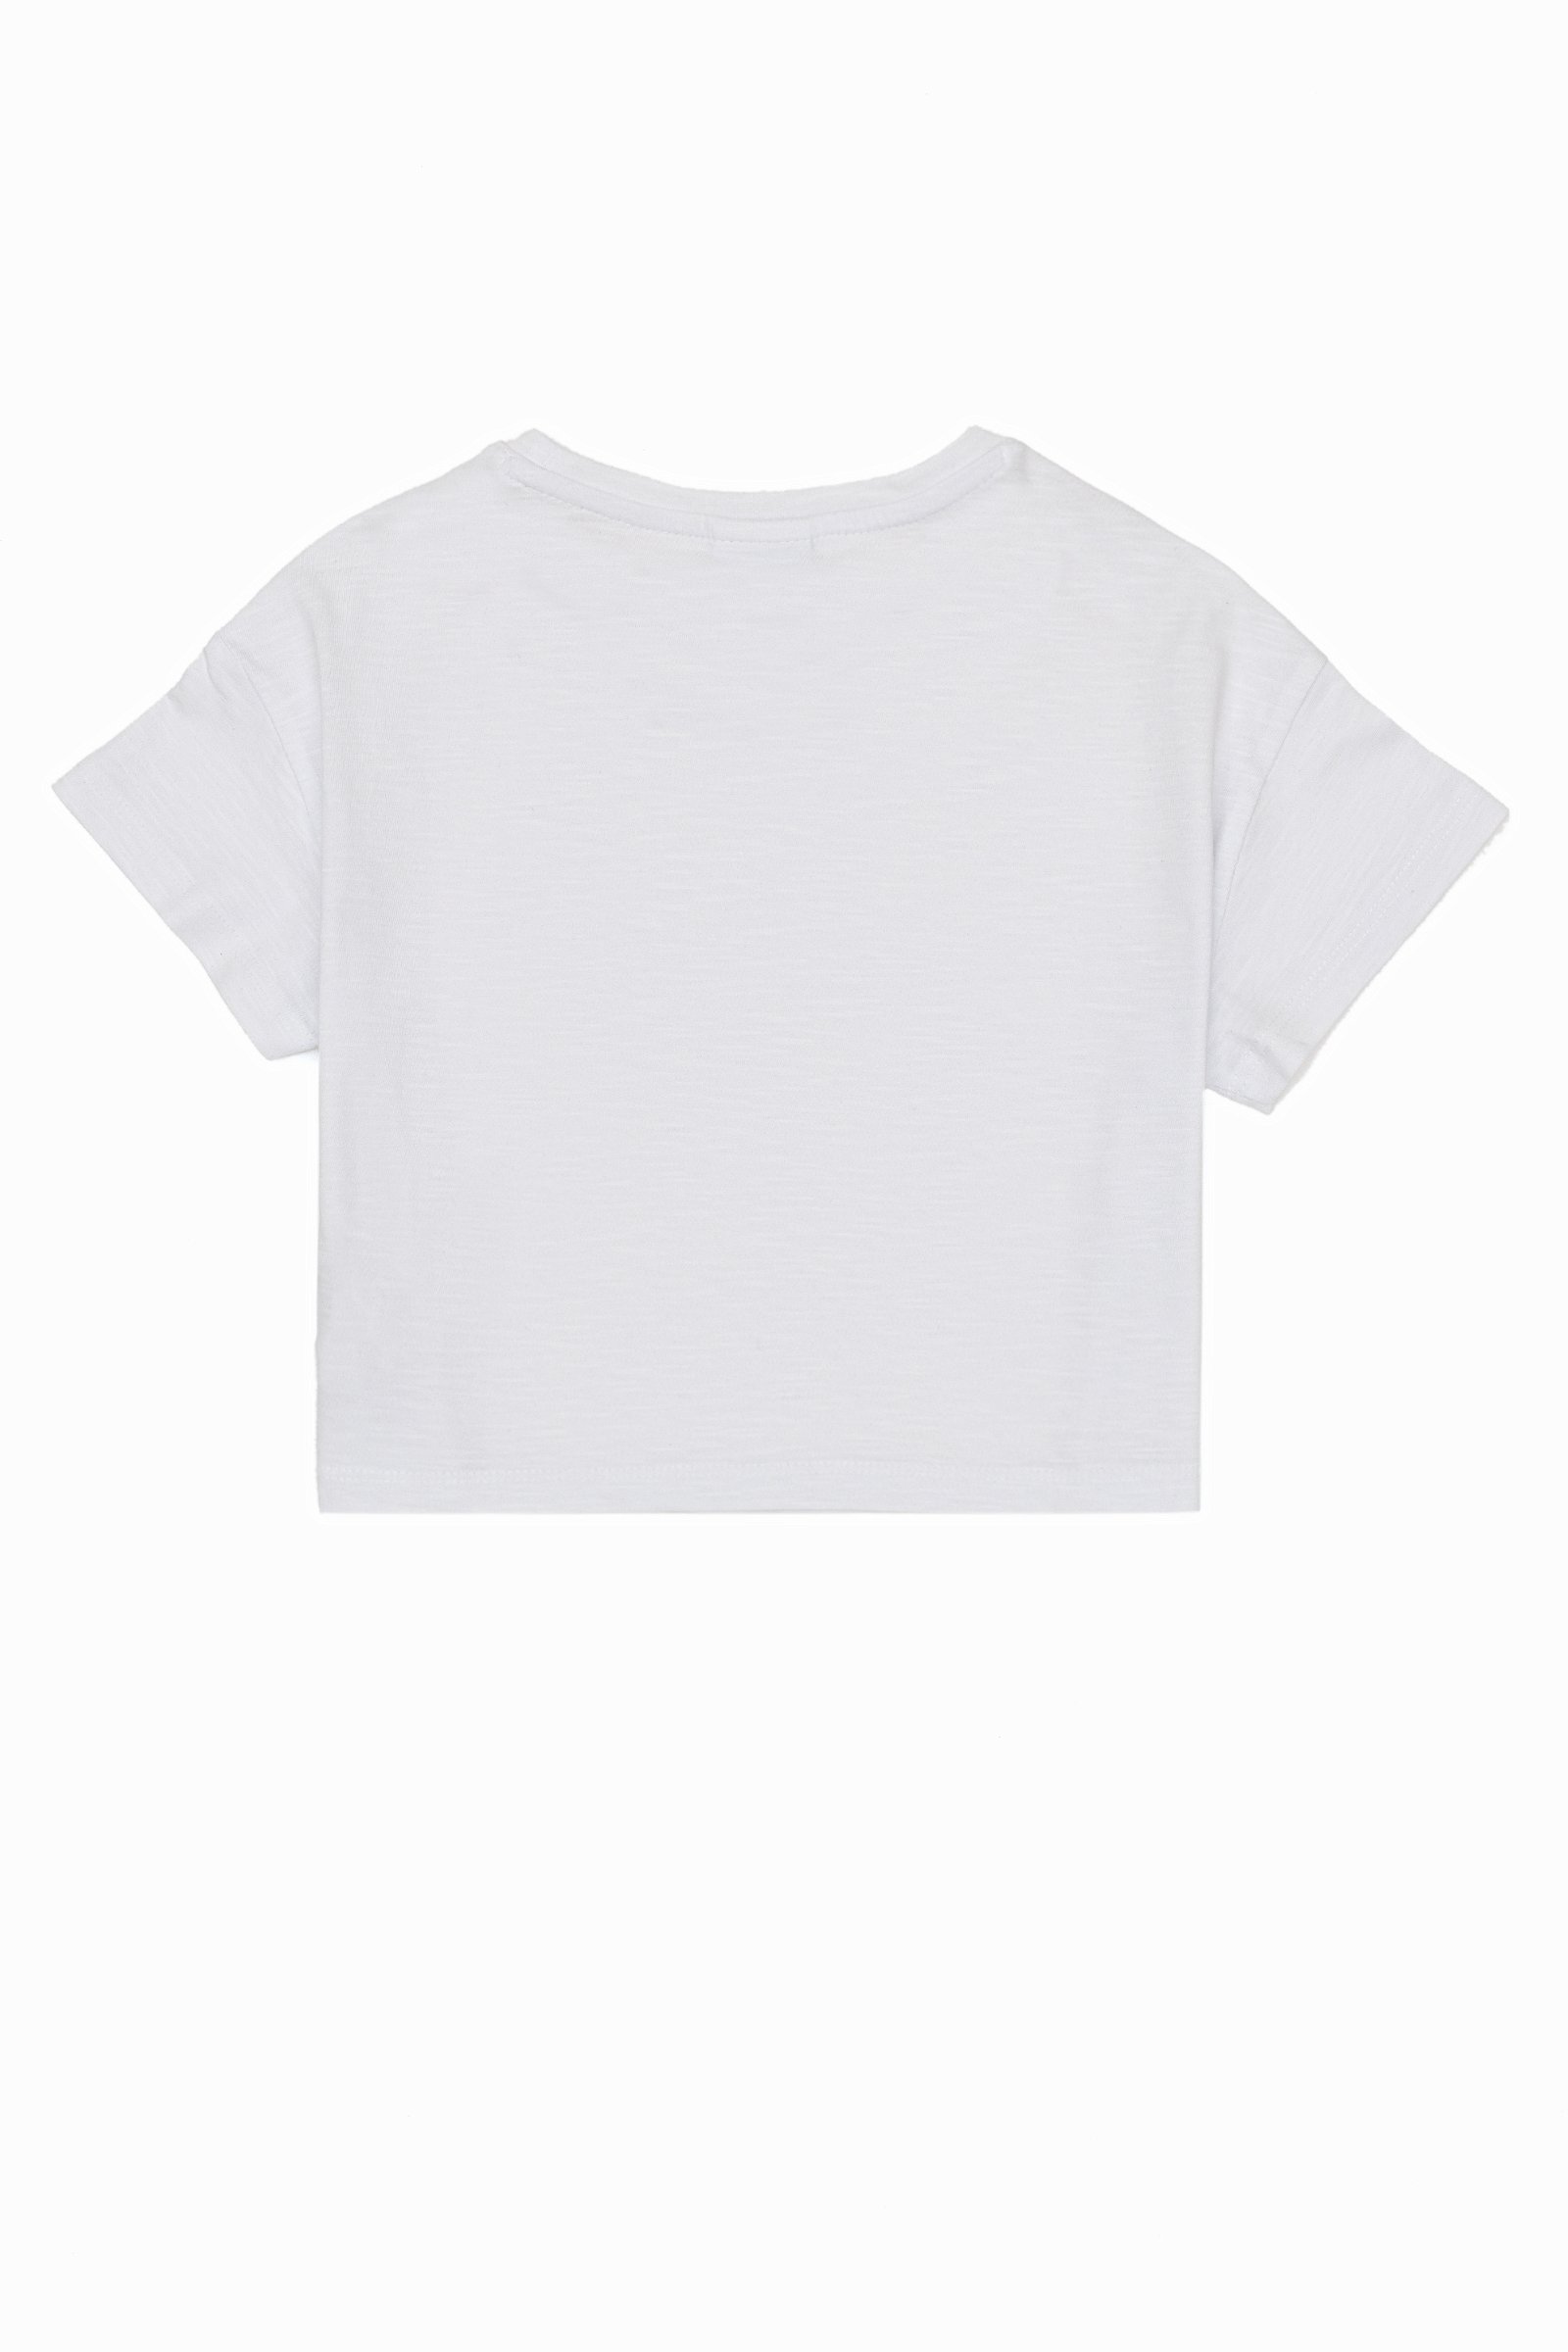 تی شرت  سفید  Crop Top  دخترانه یو اس پولو